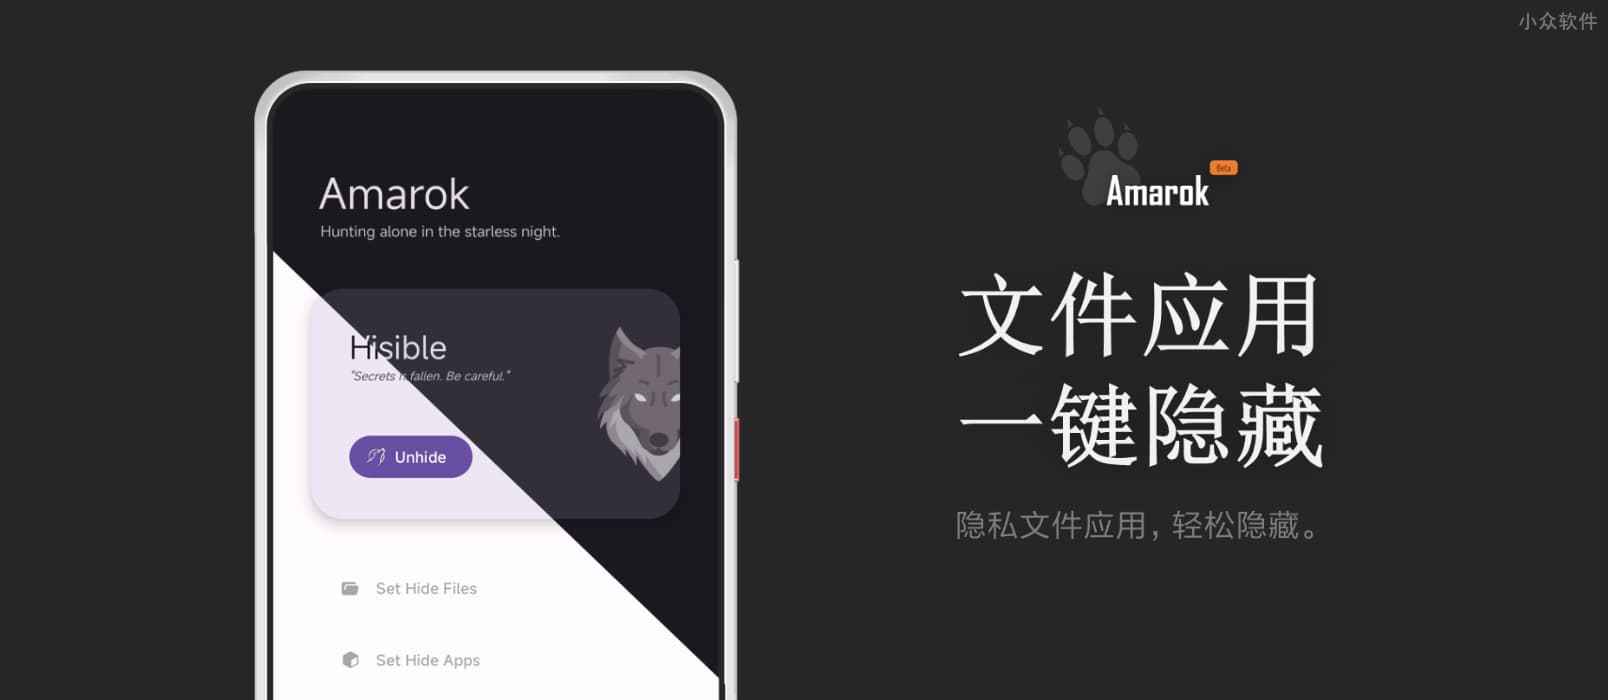 Amarok - 一键隐藏安卓手机隐私文件和应用[Android] 1